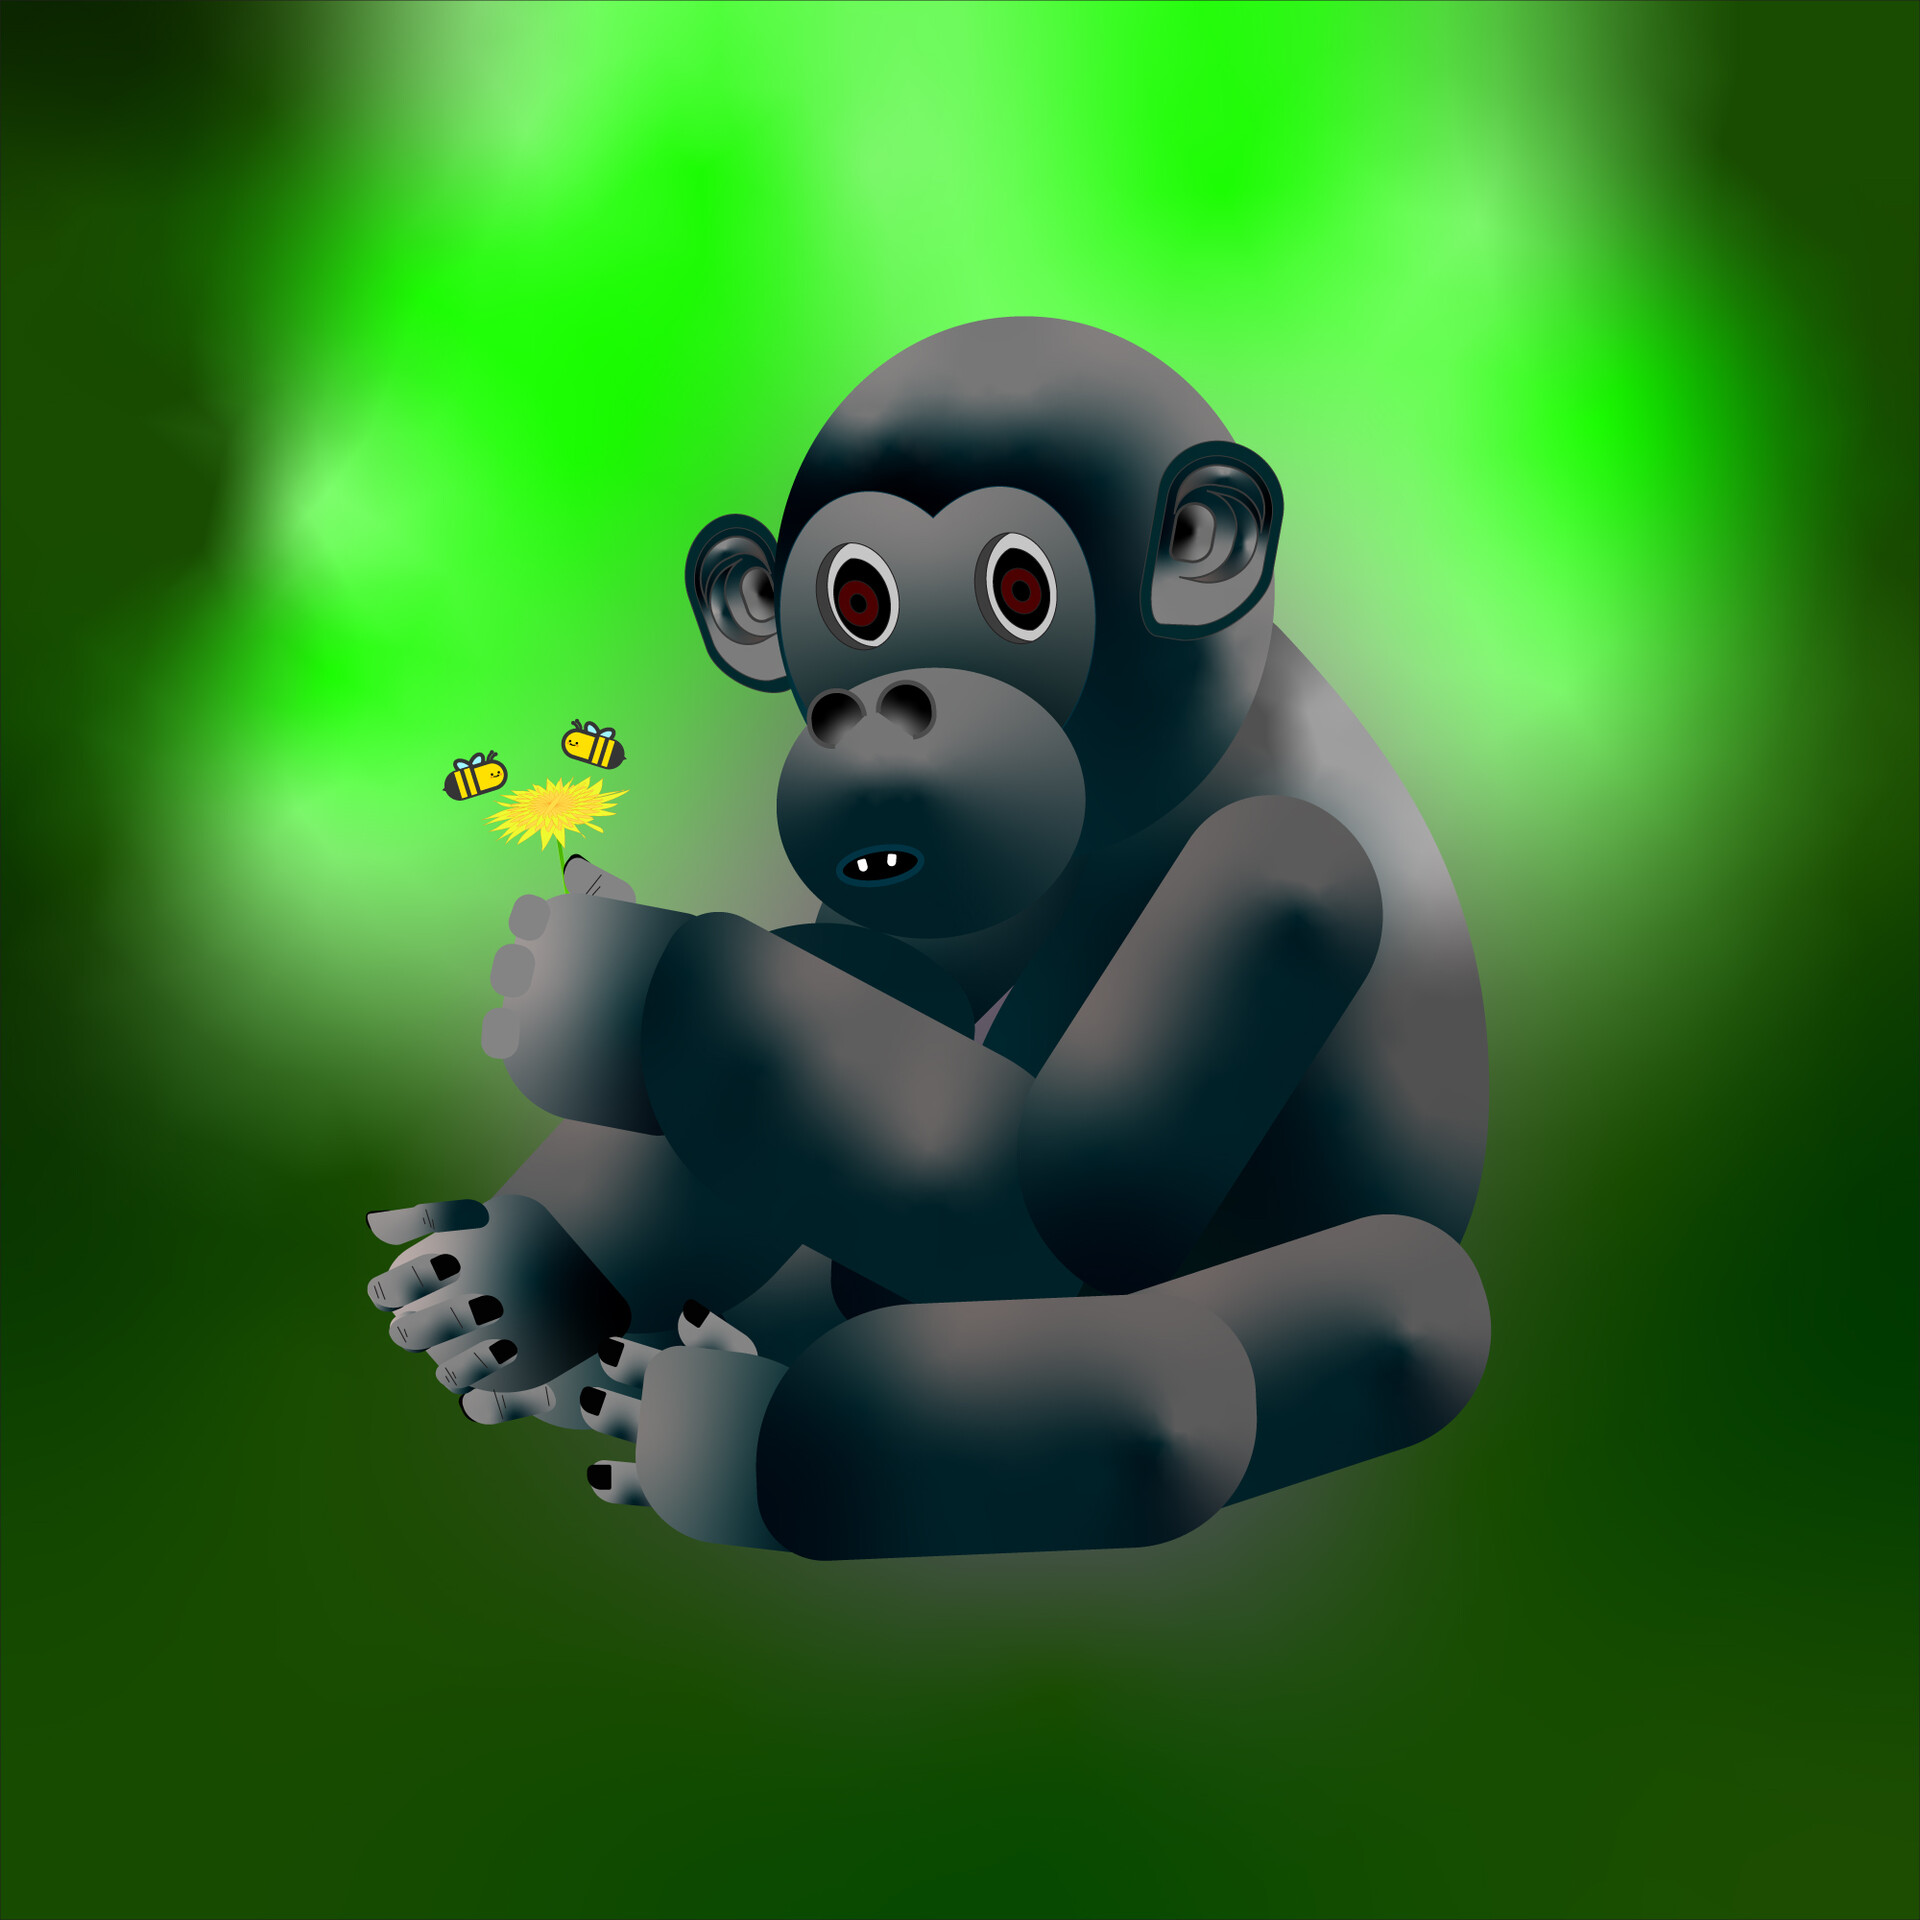 ArtStation - Baby Gorilla illustration